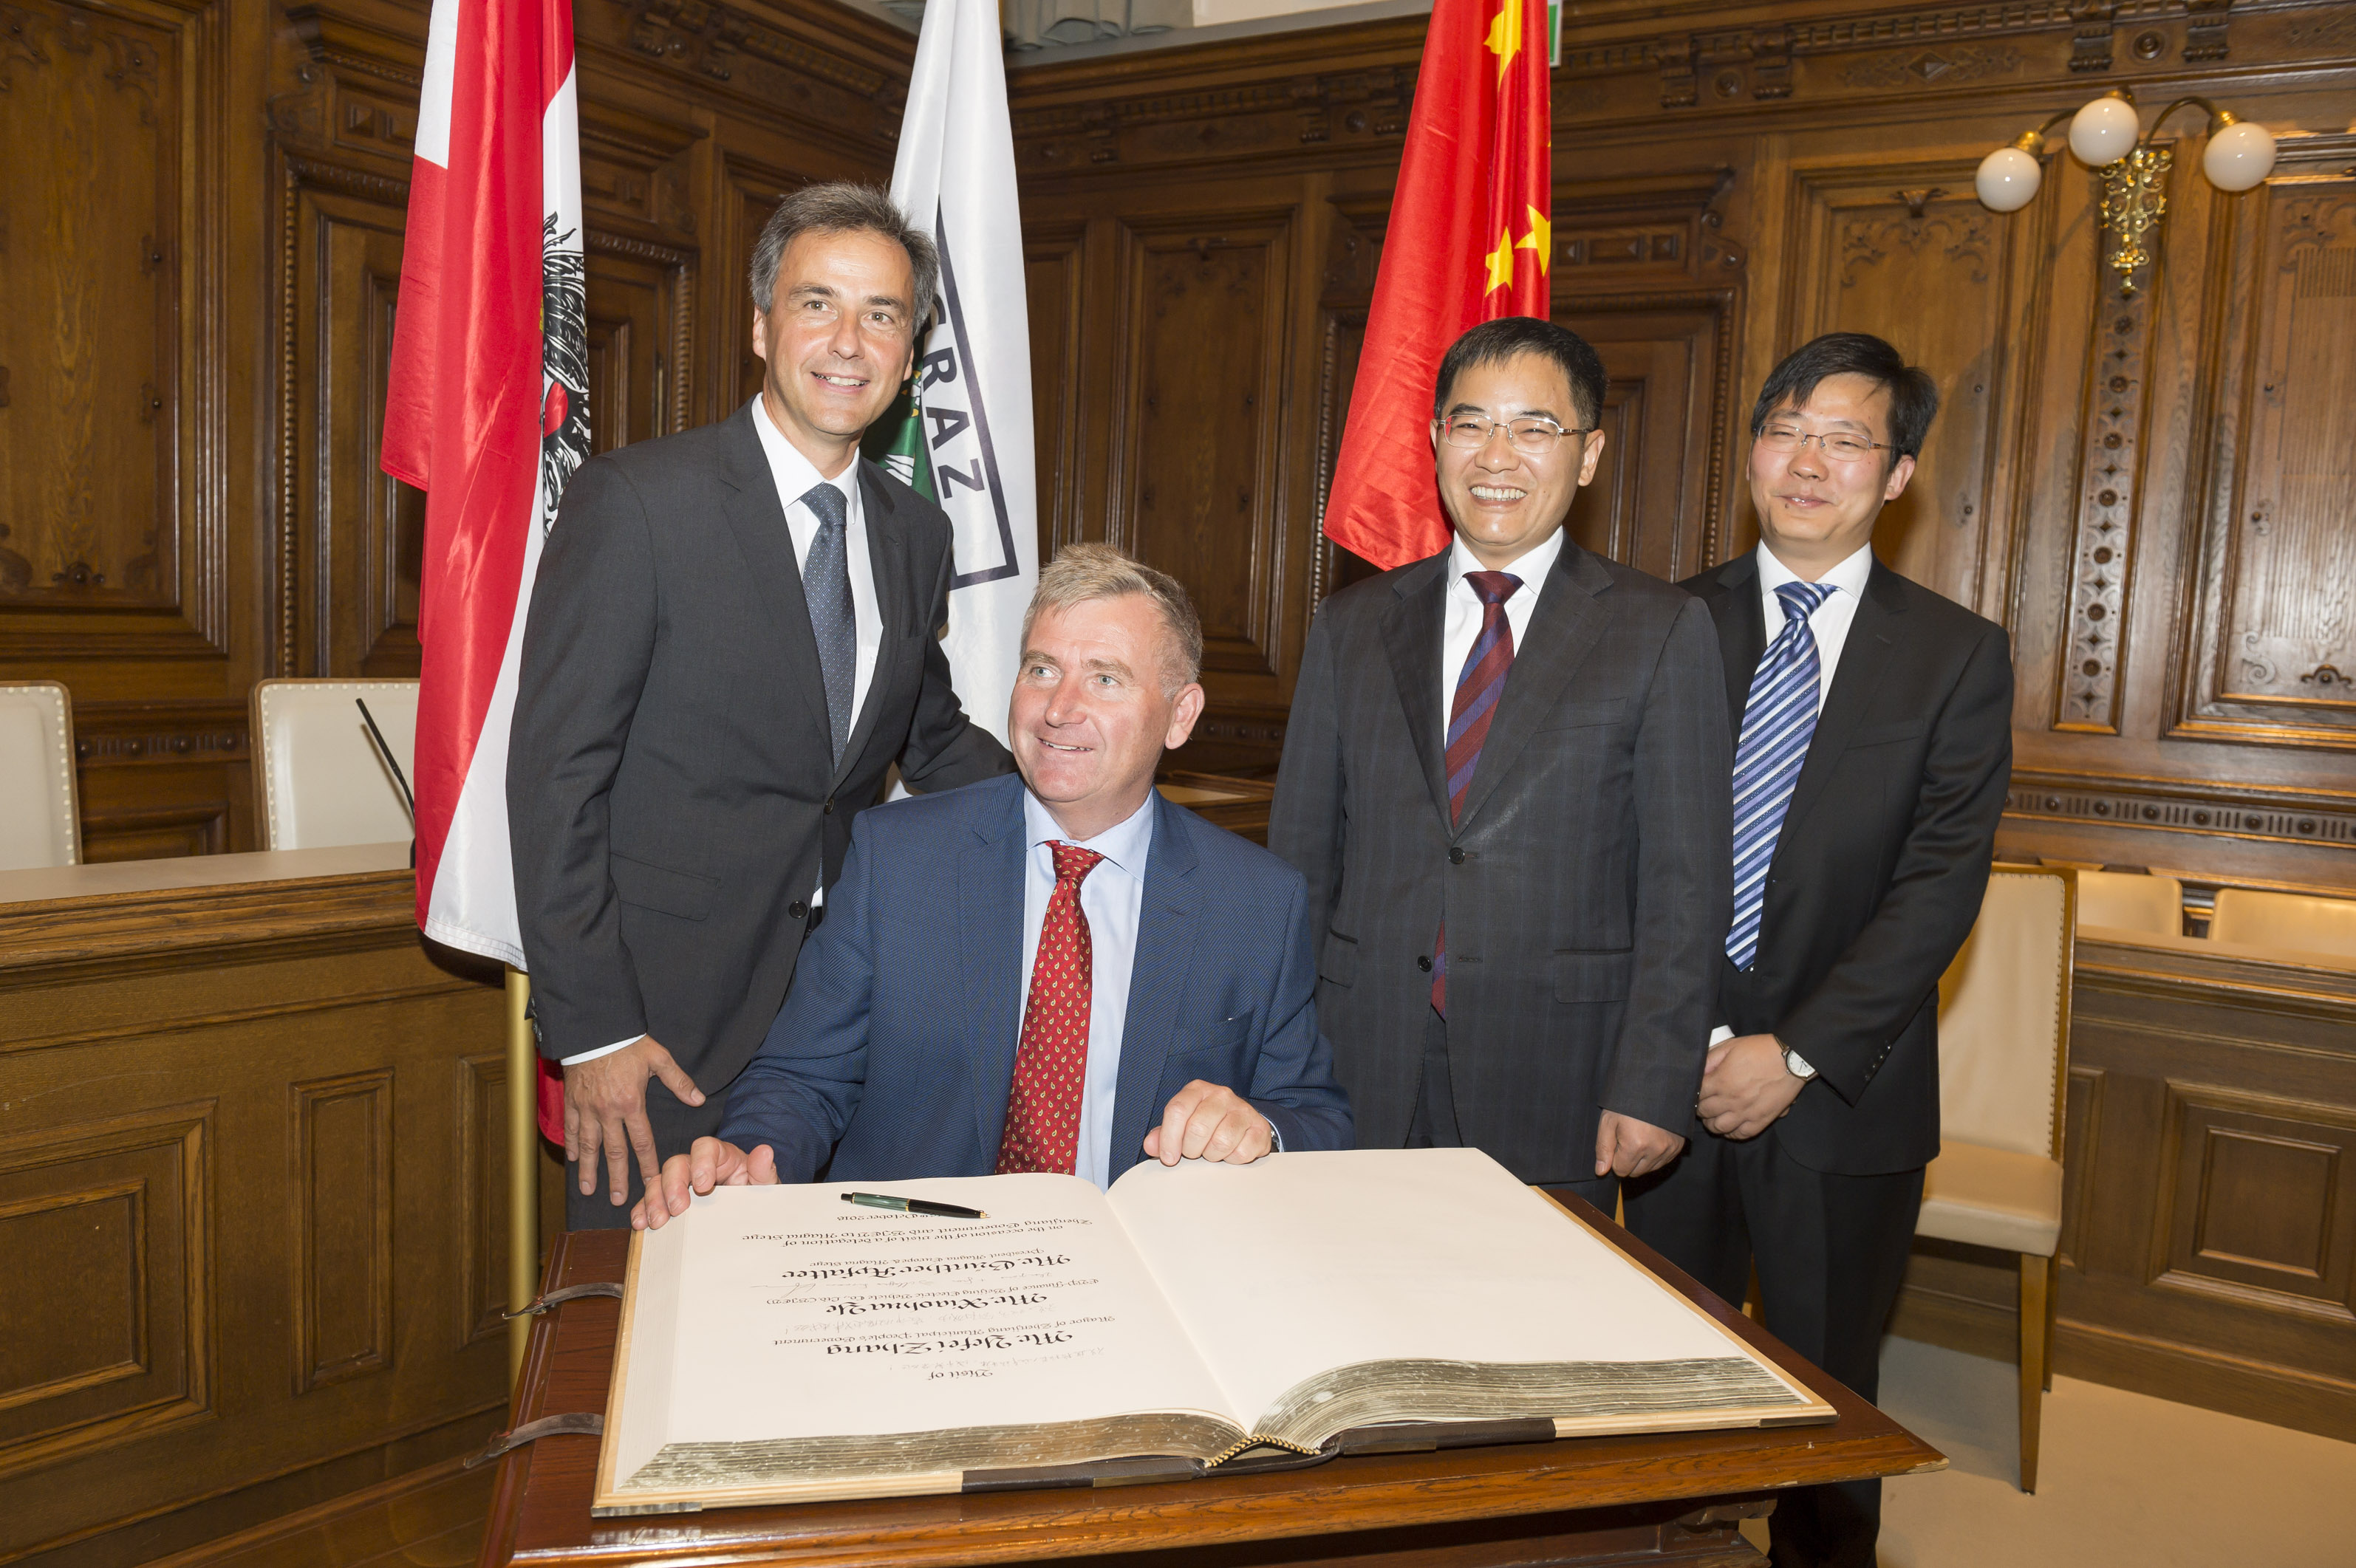 Bürgermeister Nagl mit der Delegation aus Zhenjiang sowie Magna-Präsident Günther Apfalter (sitzend).